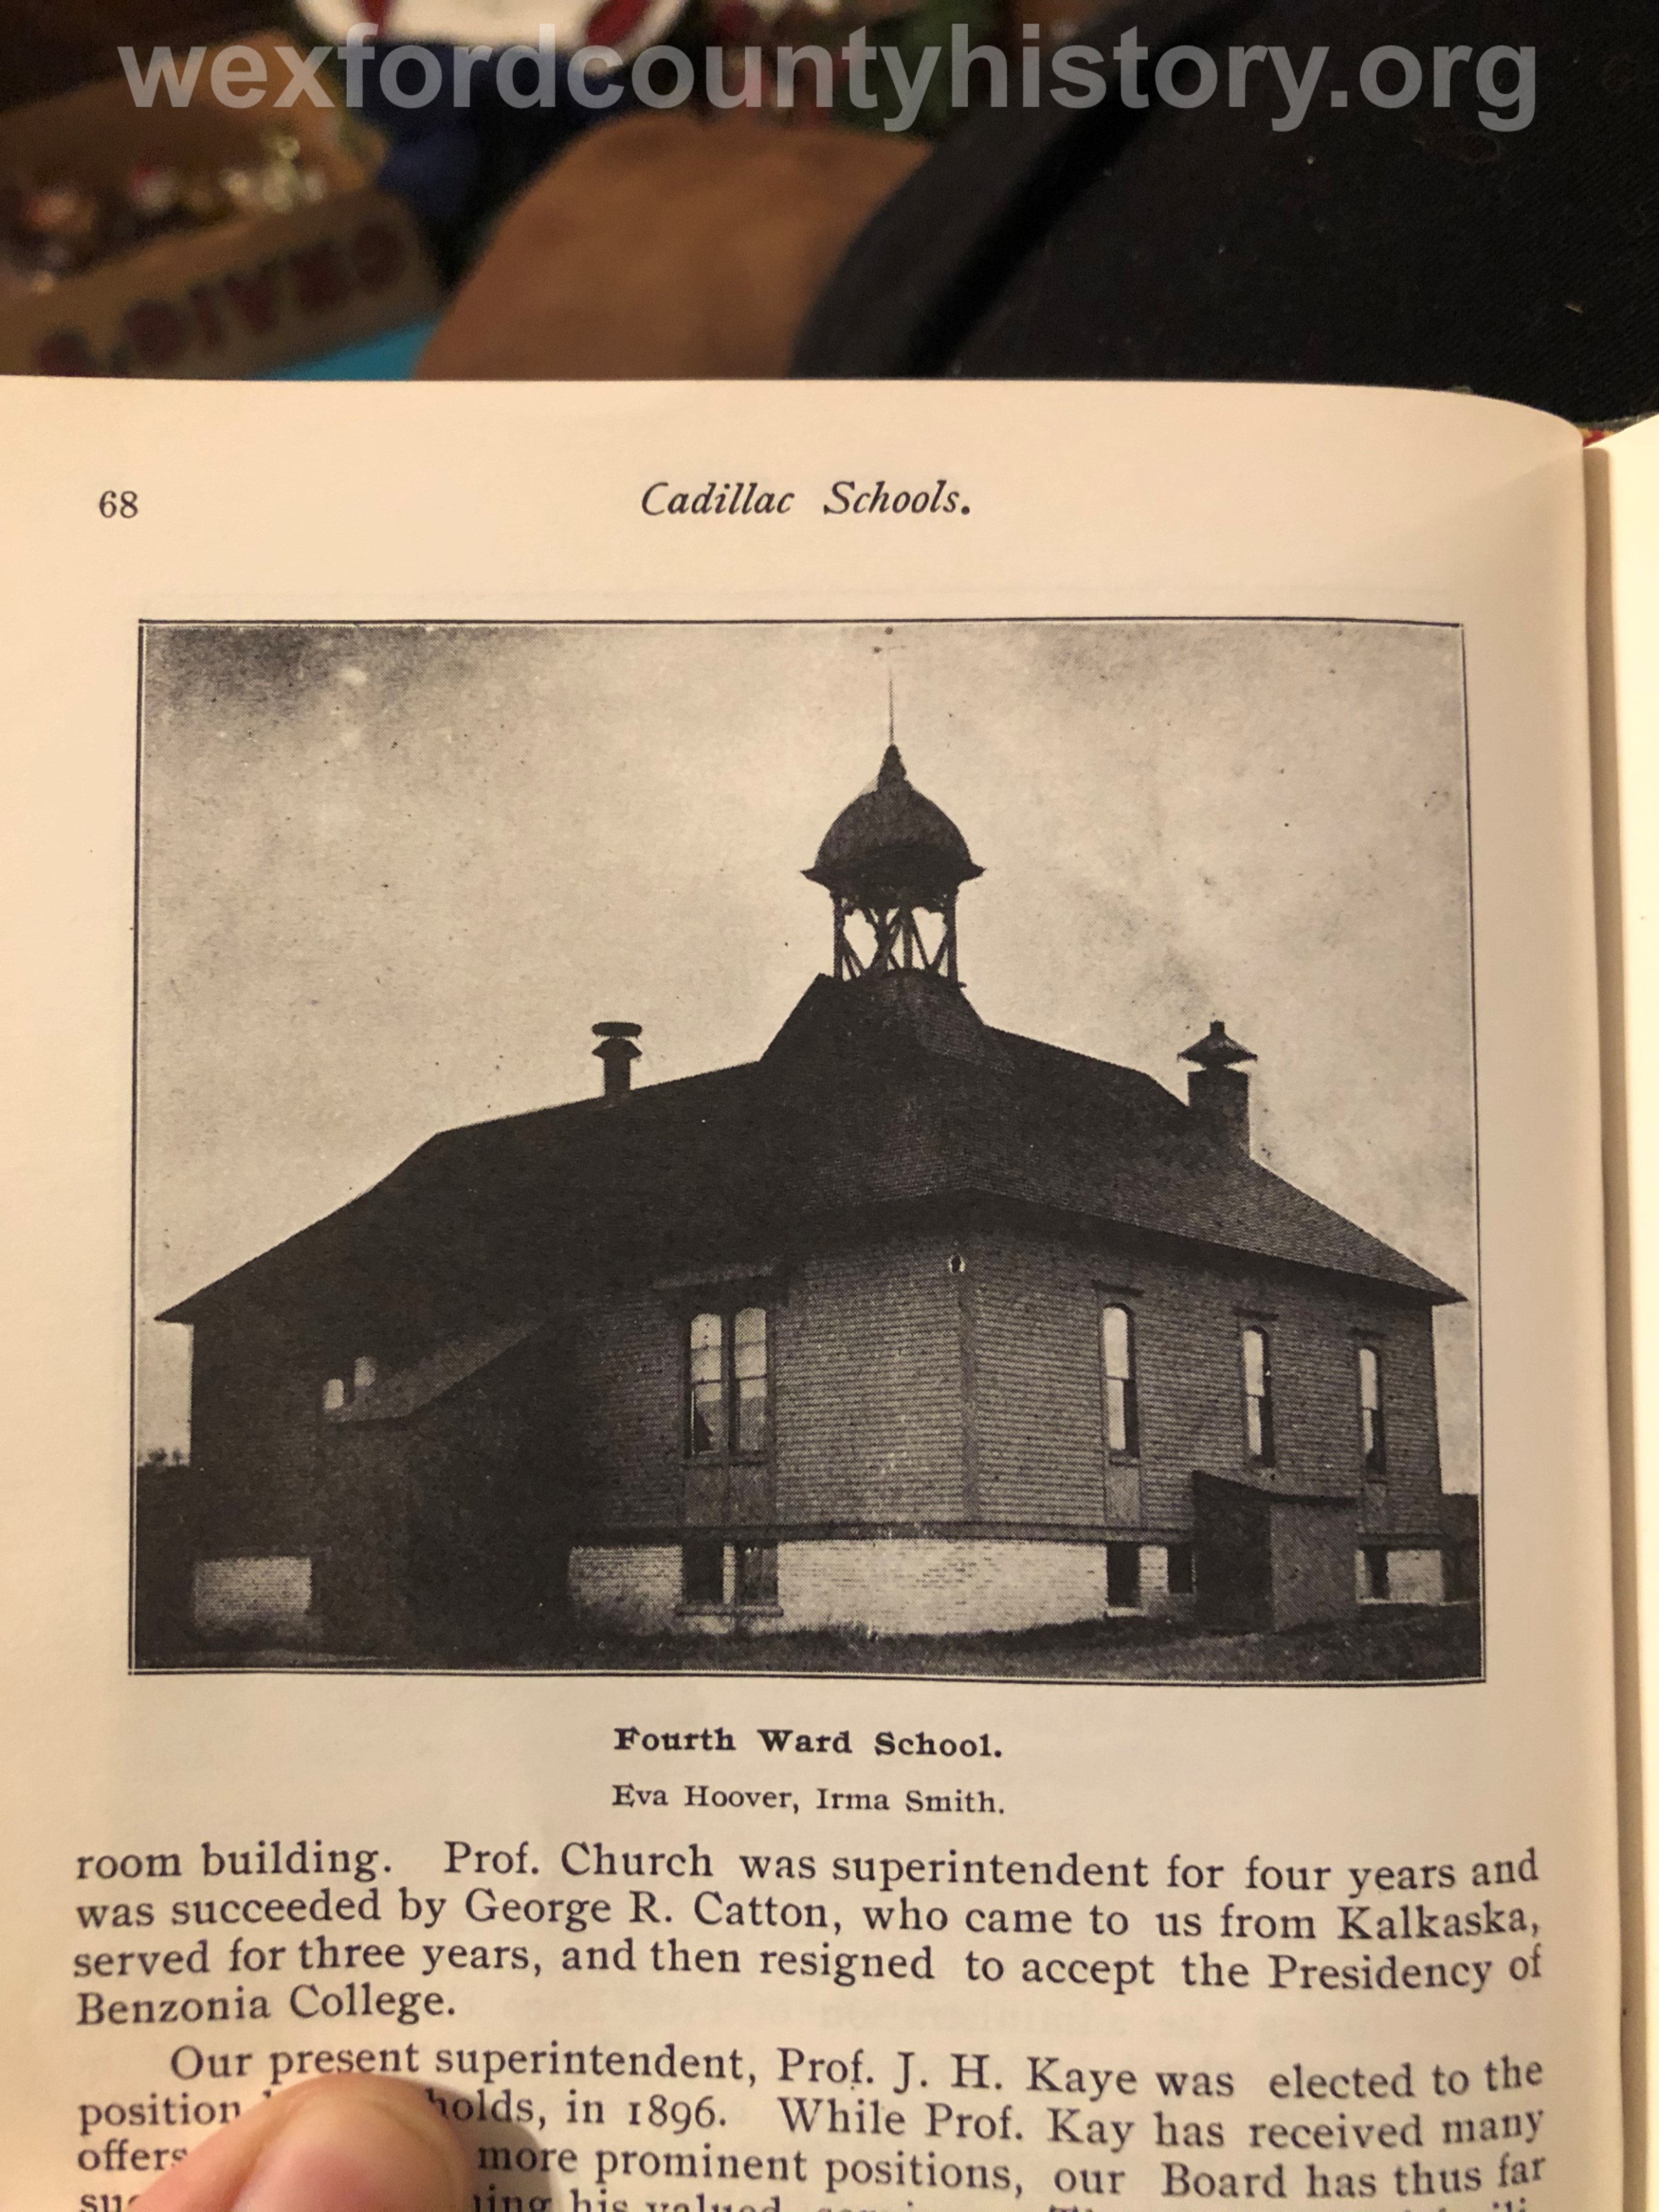 Old Cooley School (Fourth Ward)